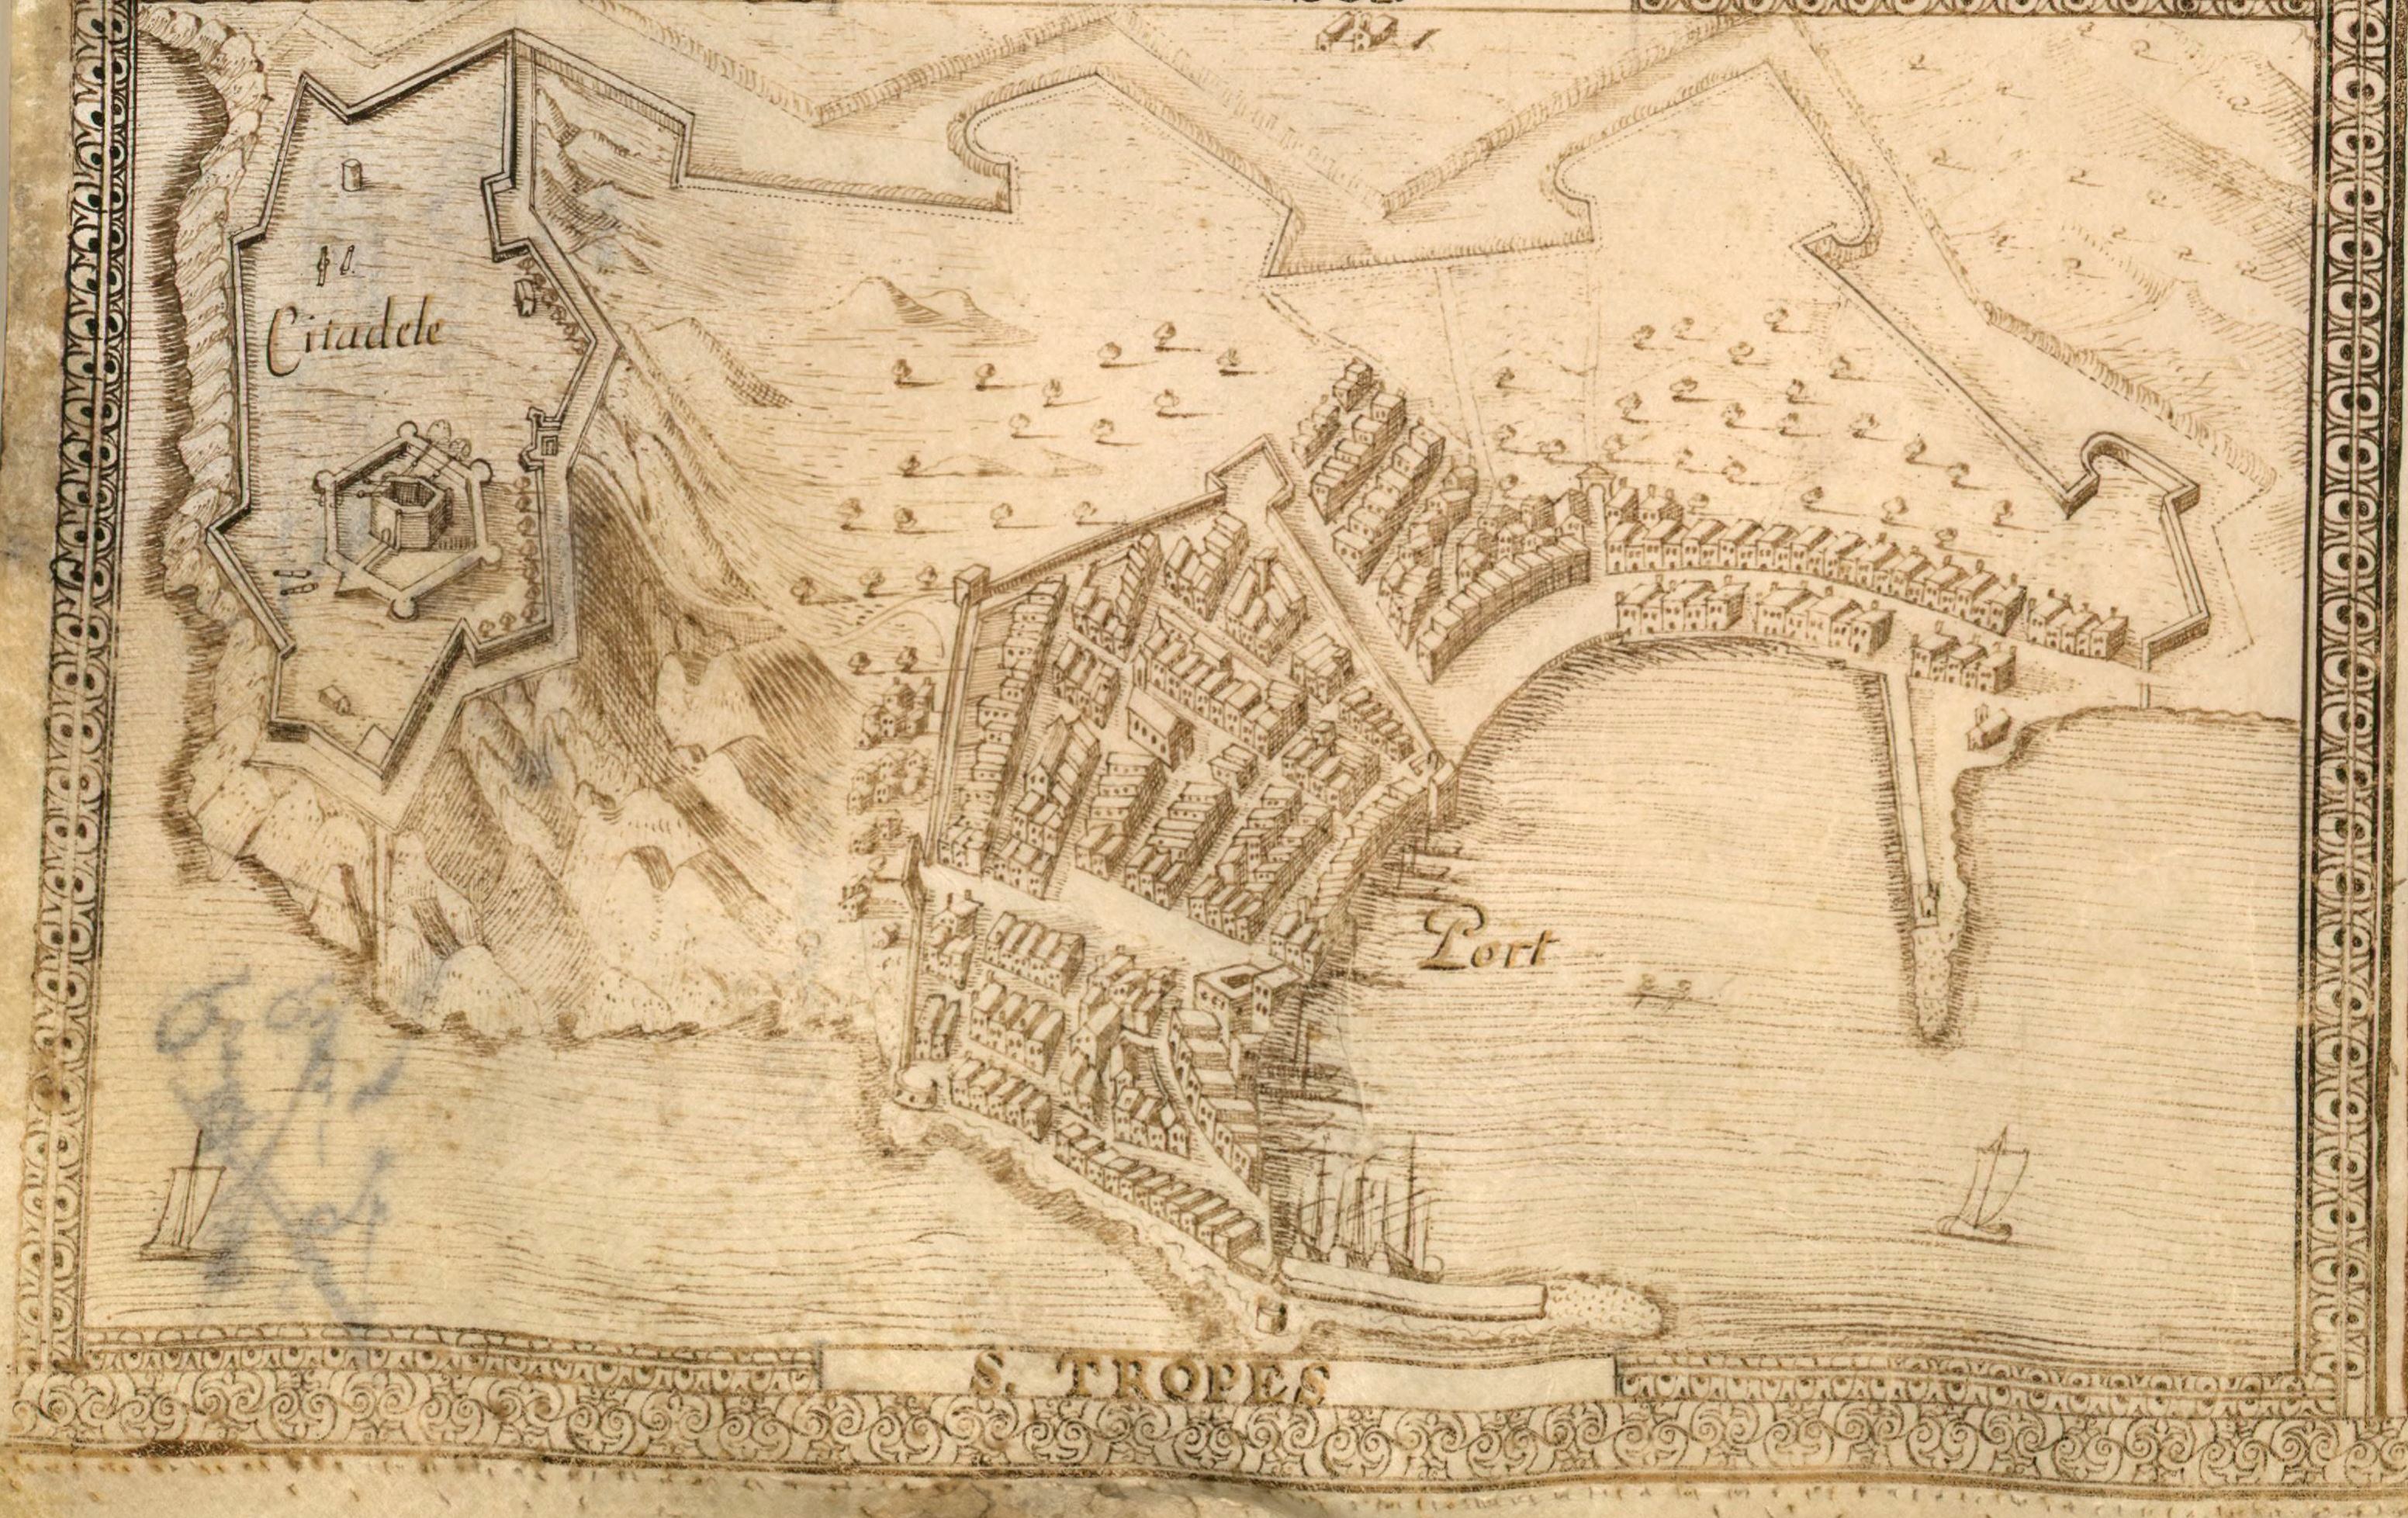 Vues perspectives de La Seine, Tollon, Hieres, breganson, Saint-Tropes, Freiuls, Saint-Rapheau, Canes, Saint-Honoré, Antibo 1631.